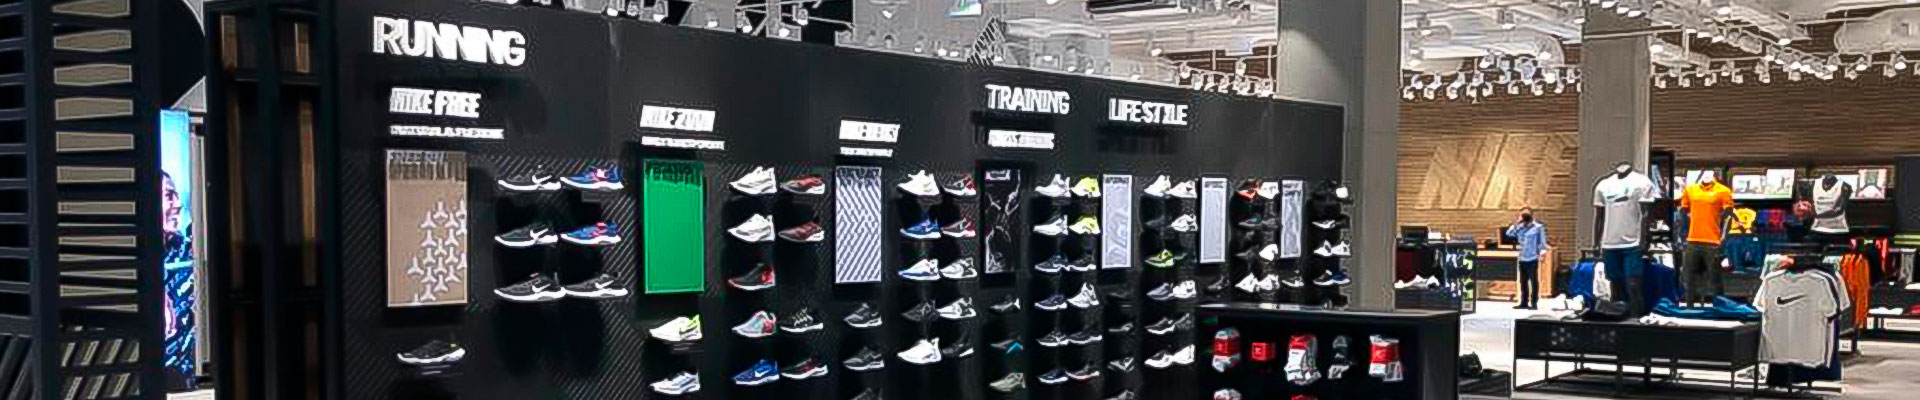 I negozi Nike del Cairo rivestiti con terrazzo Agglotech